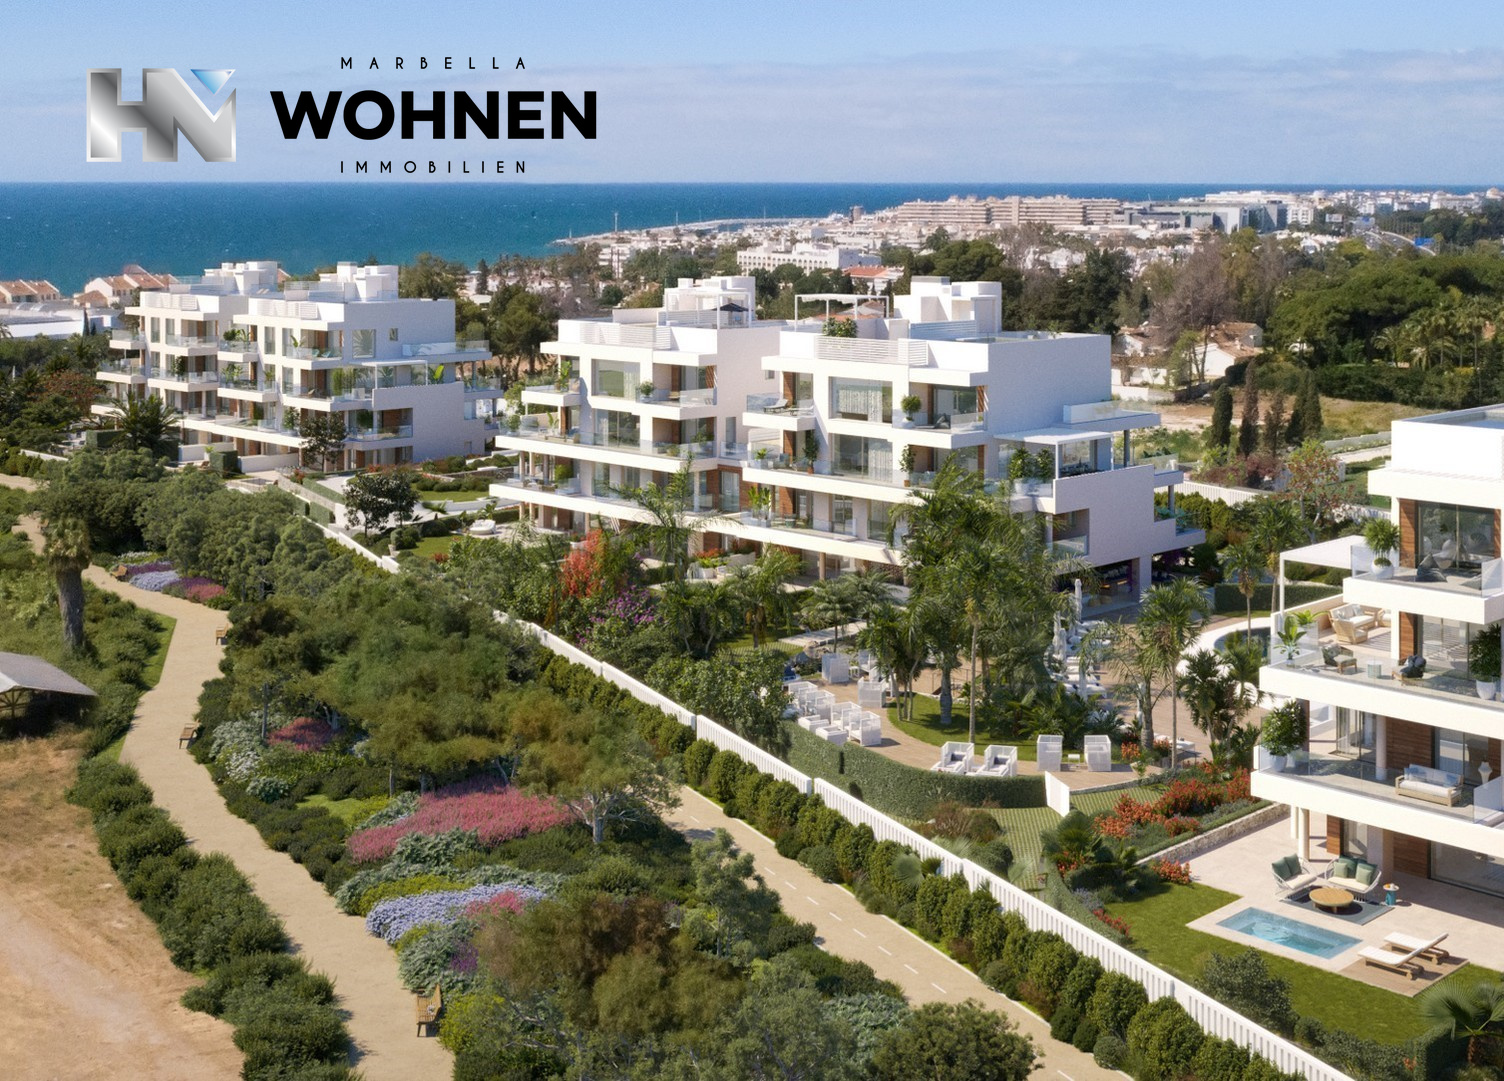 IMMOBILIEN – MARBELLA WOHNEN – Träumen Sie mit Ihrer Luxusimmobilie in Marbella